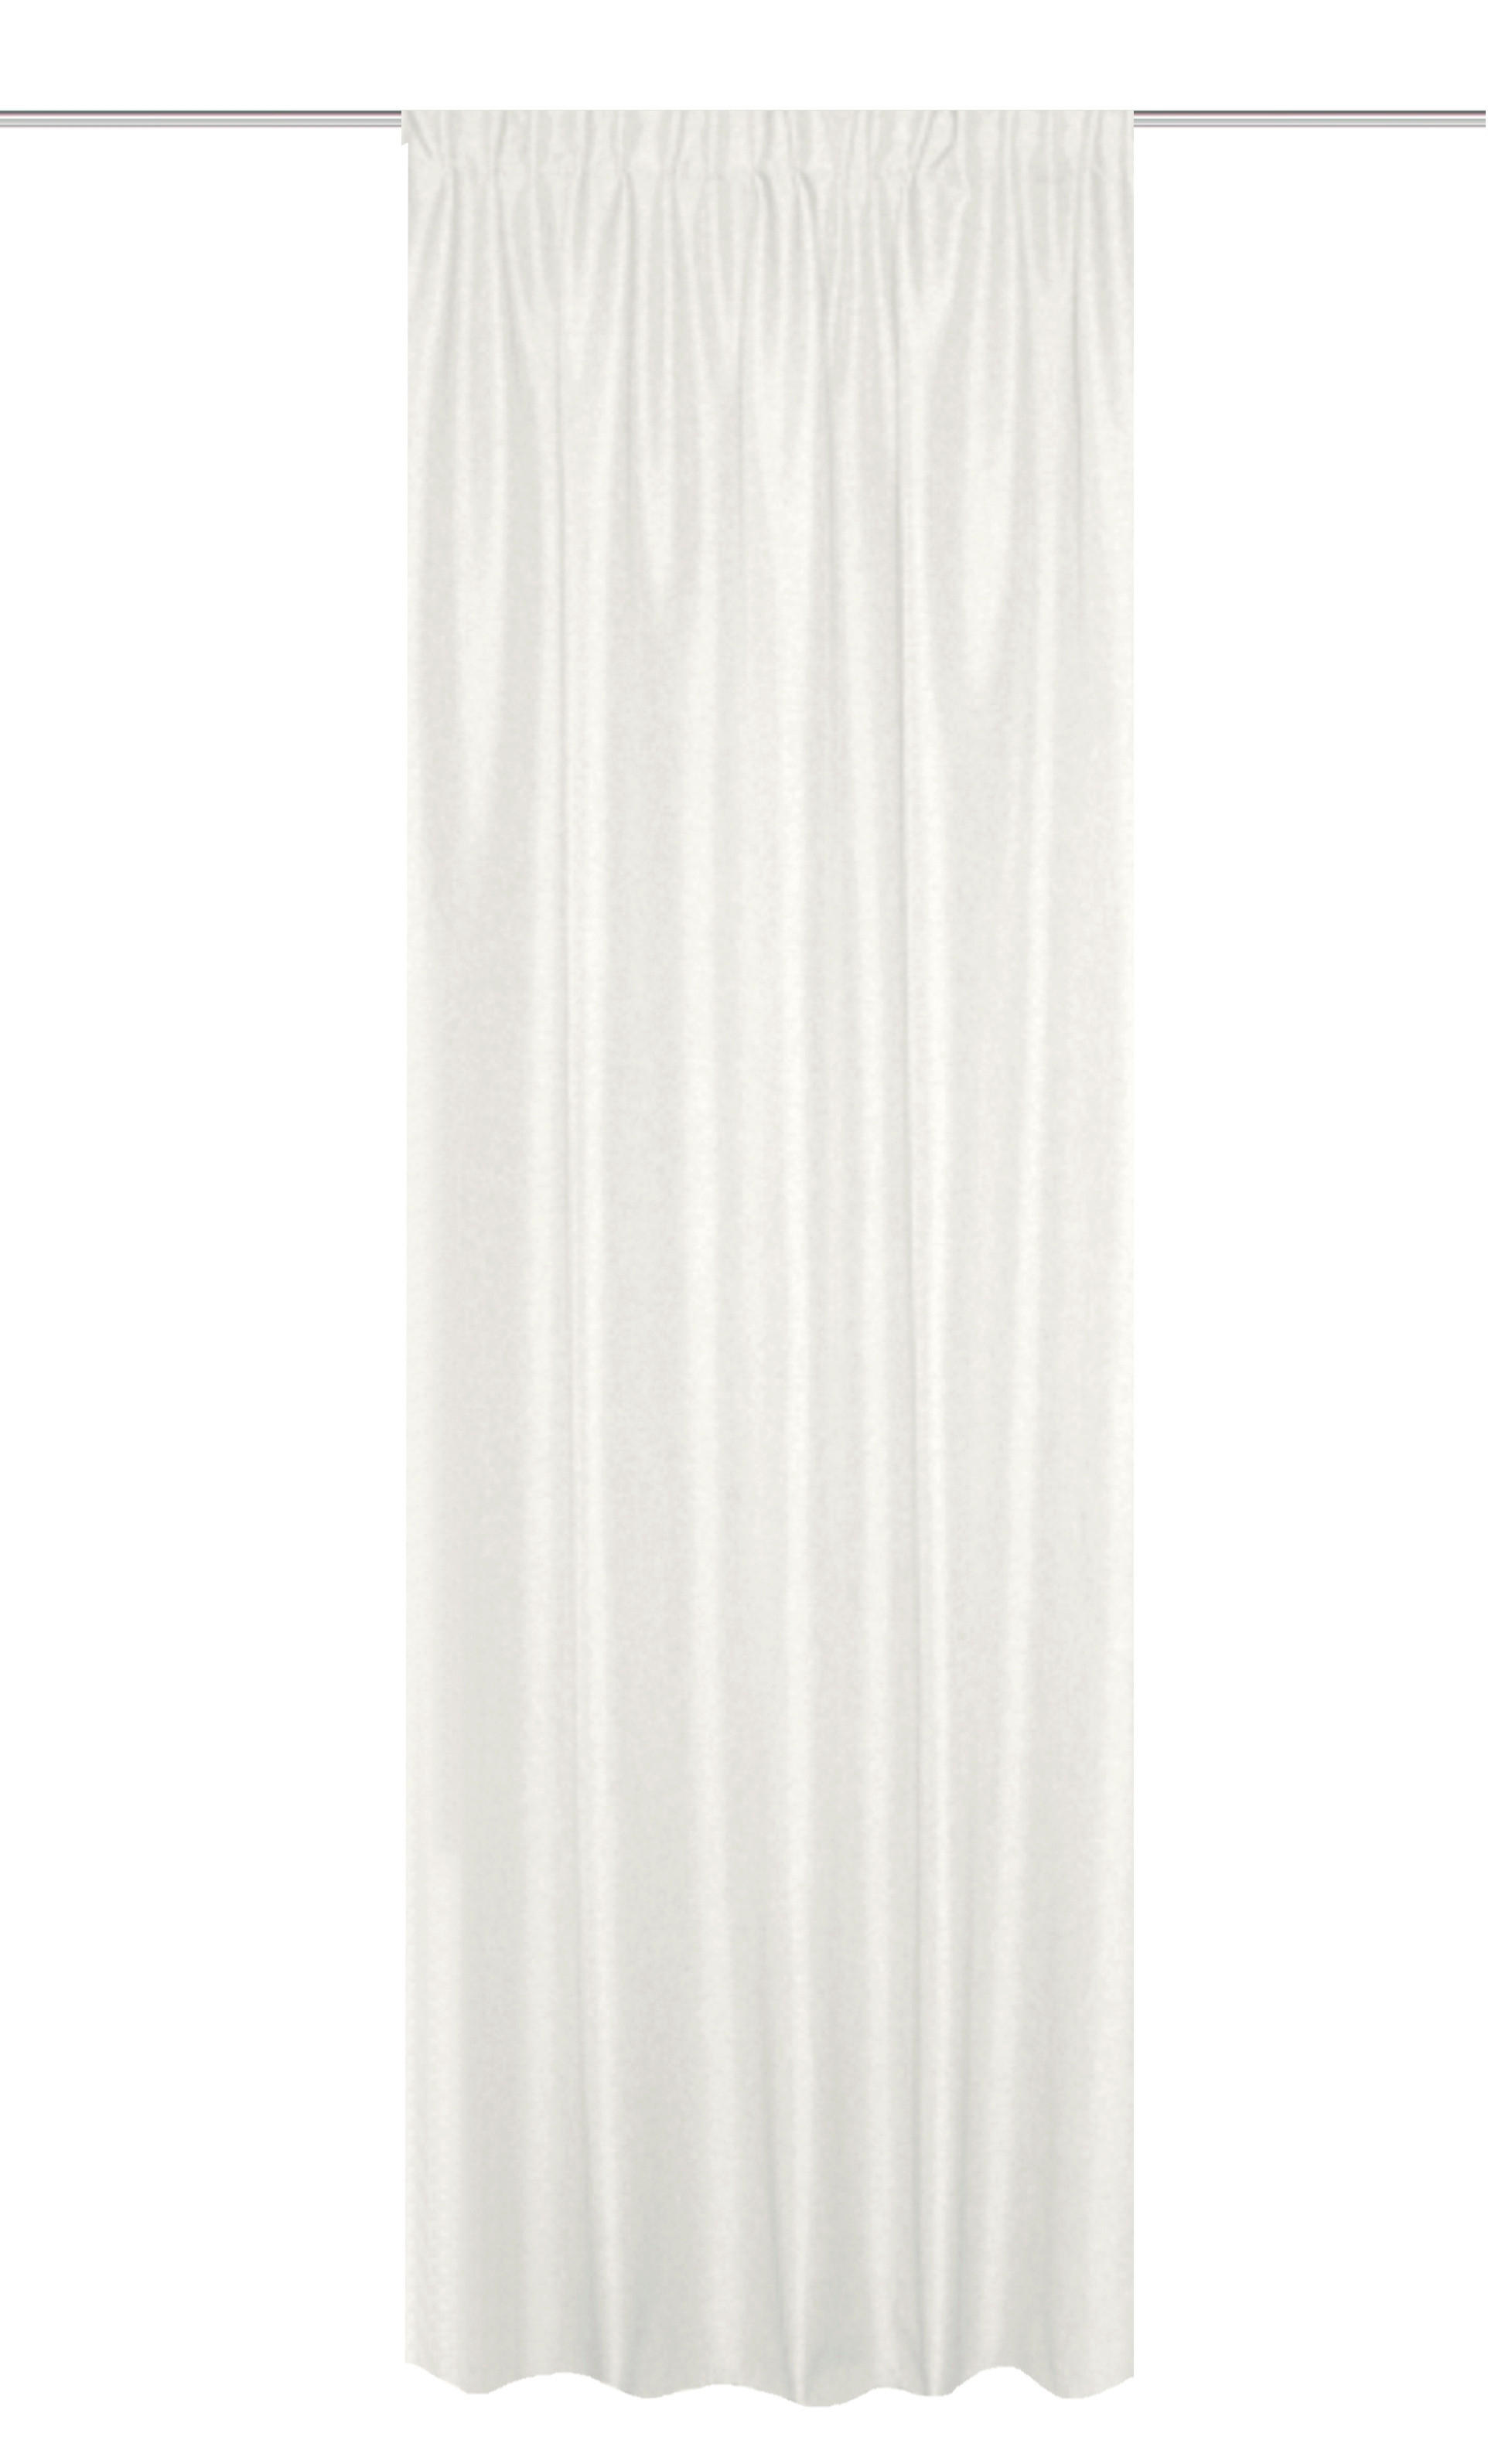 WÄRMESCHUTZVORHANG  blickdicht  135/225 cm   - Weiß, Basics, Textil (135/225cm)